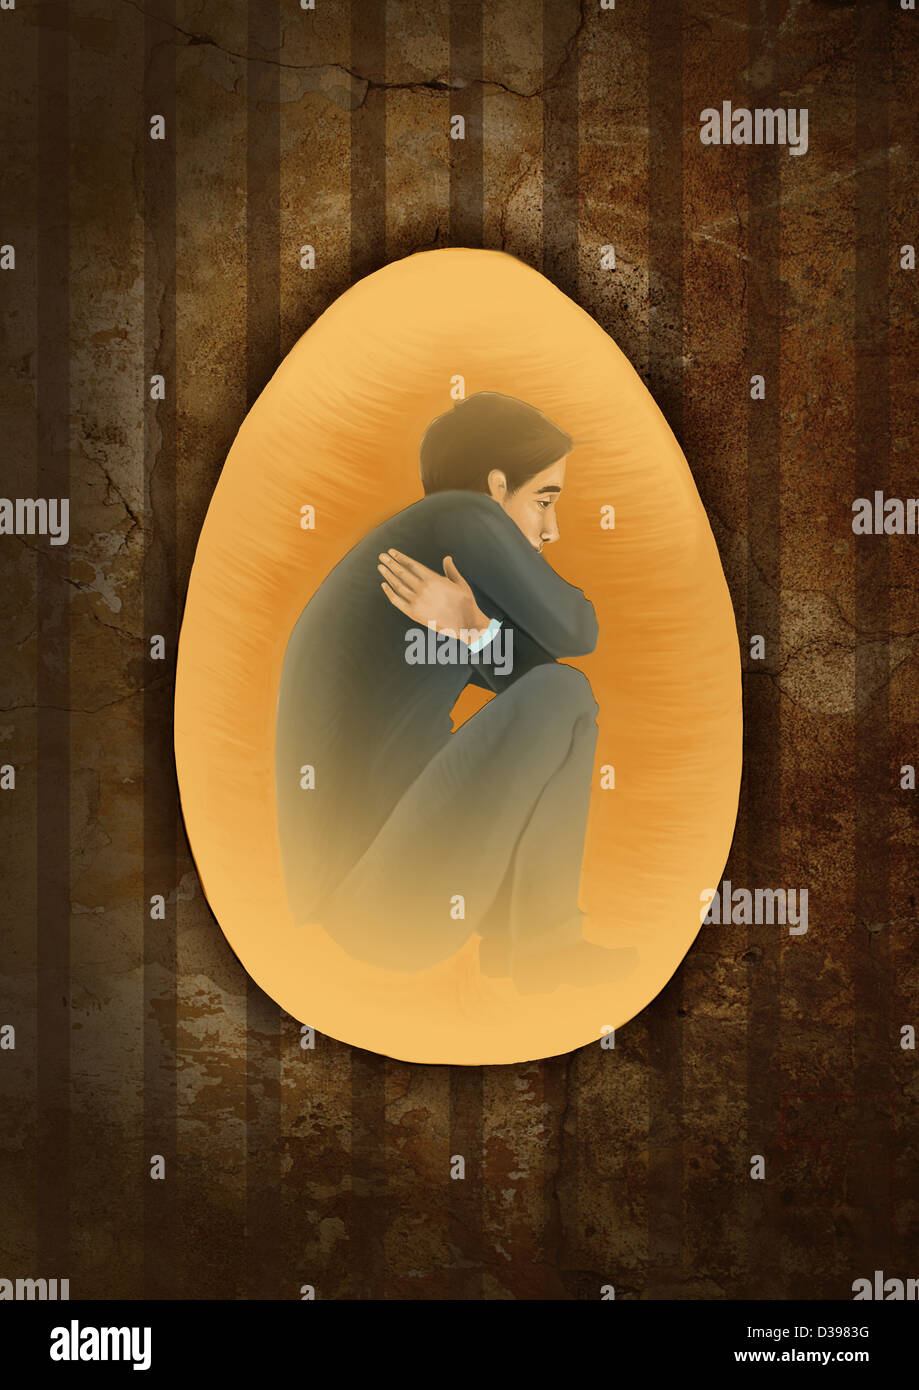 Vista laterale di un uomo accovacciato all'interno di uovo che raffigura il concetto del prigioniero della mente Foto Stock